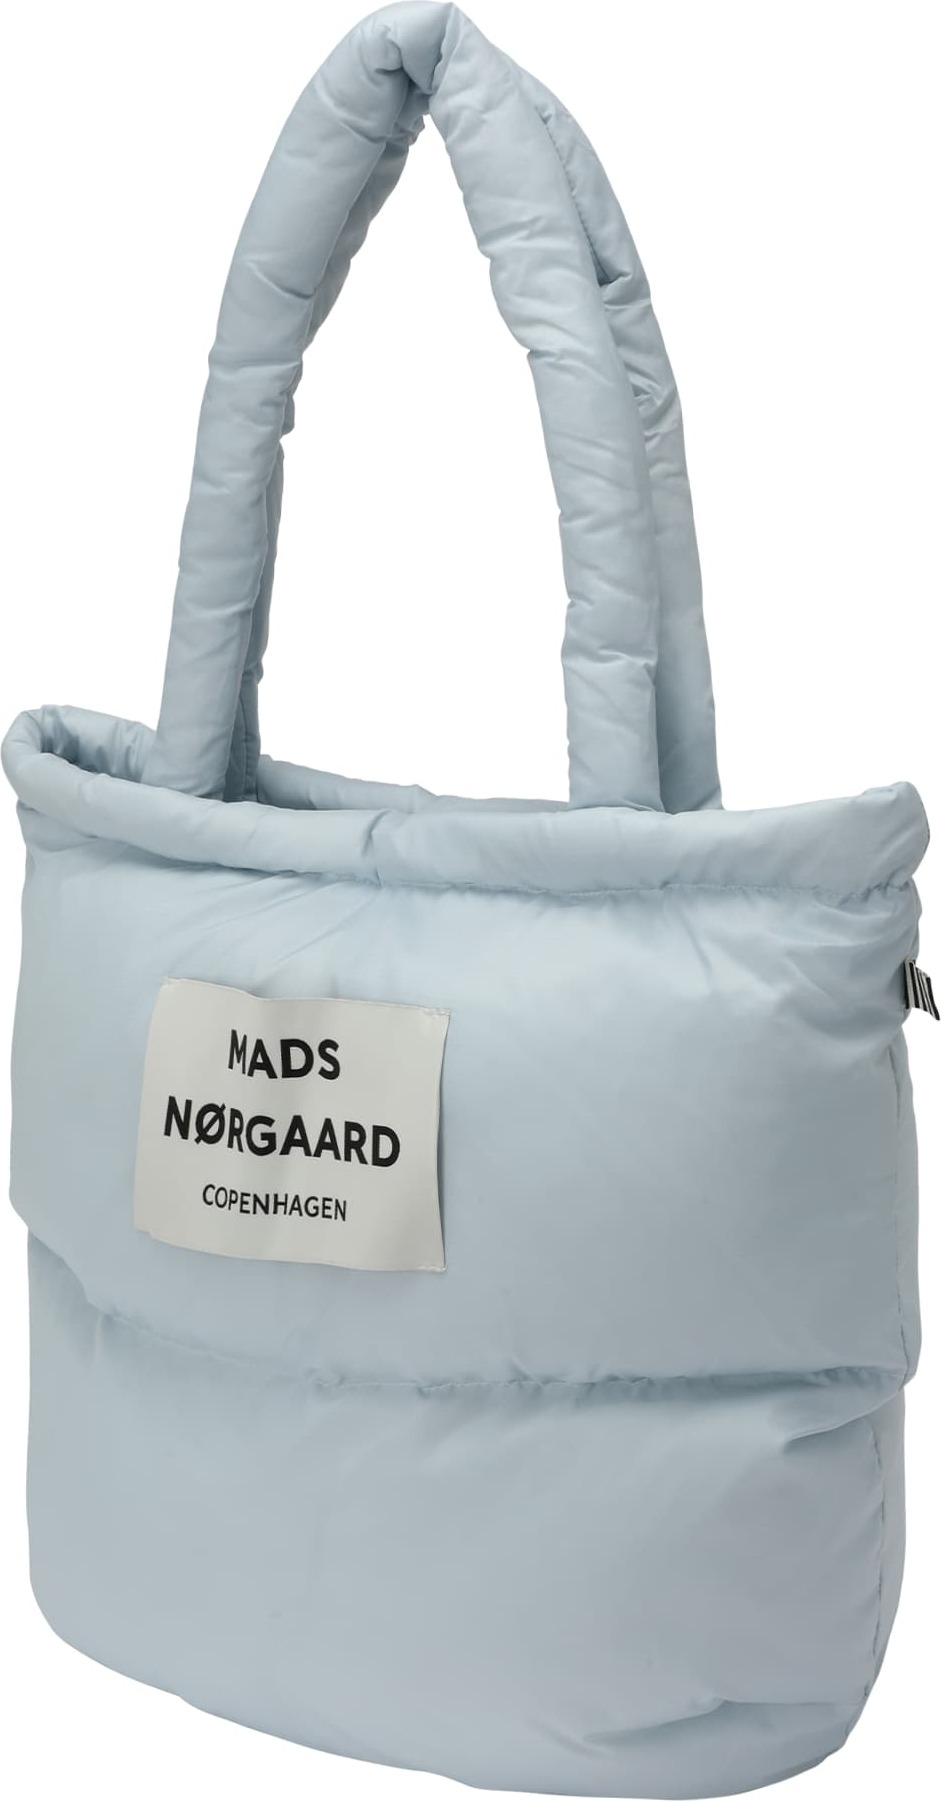 MADS NORGAARD COPENHAGEN Nákupní taška světlemodrá / bílá